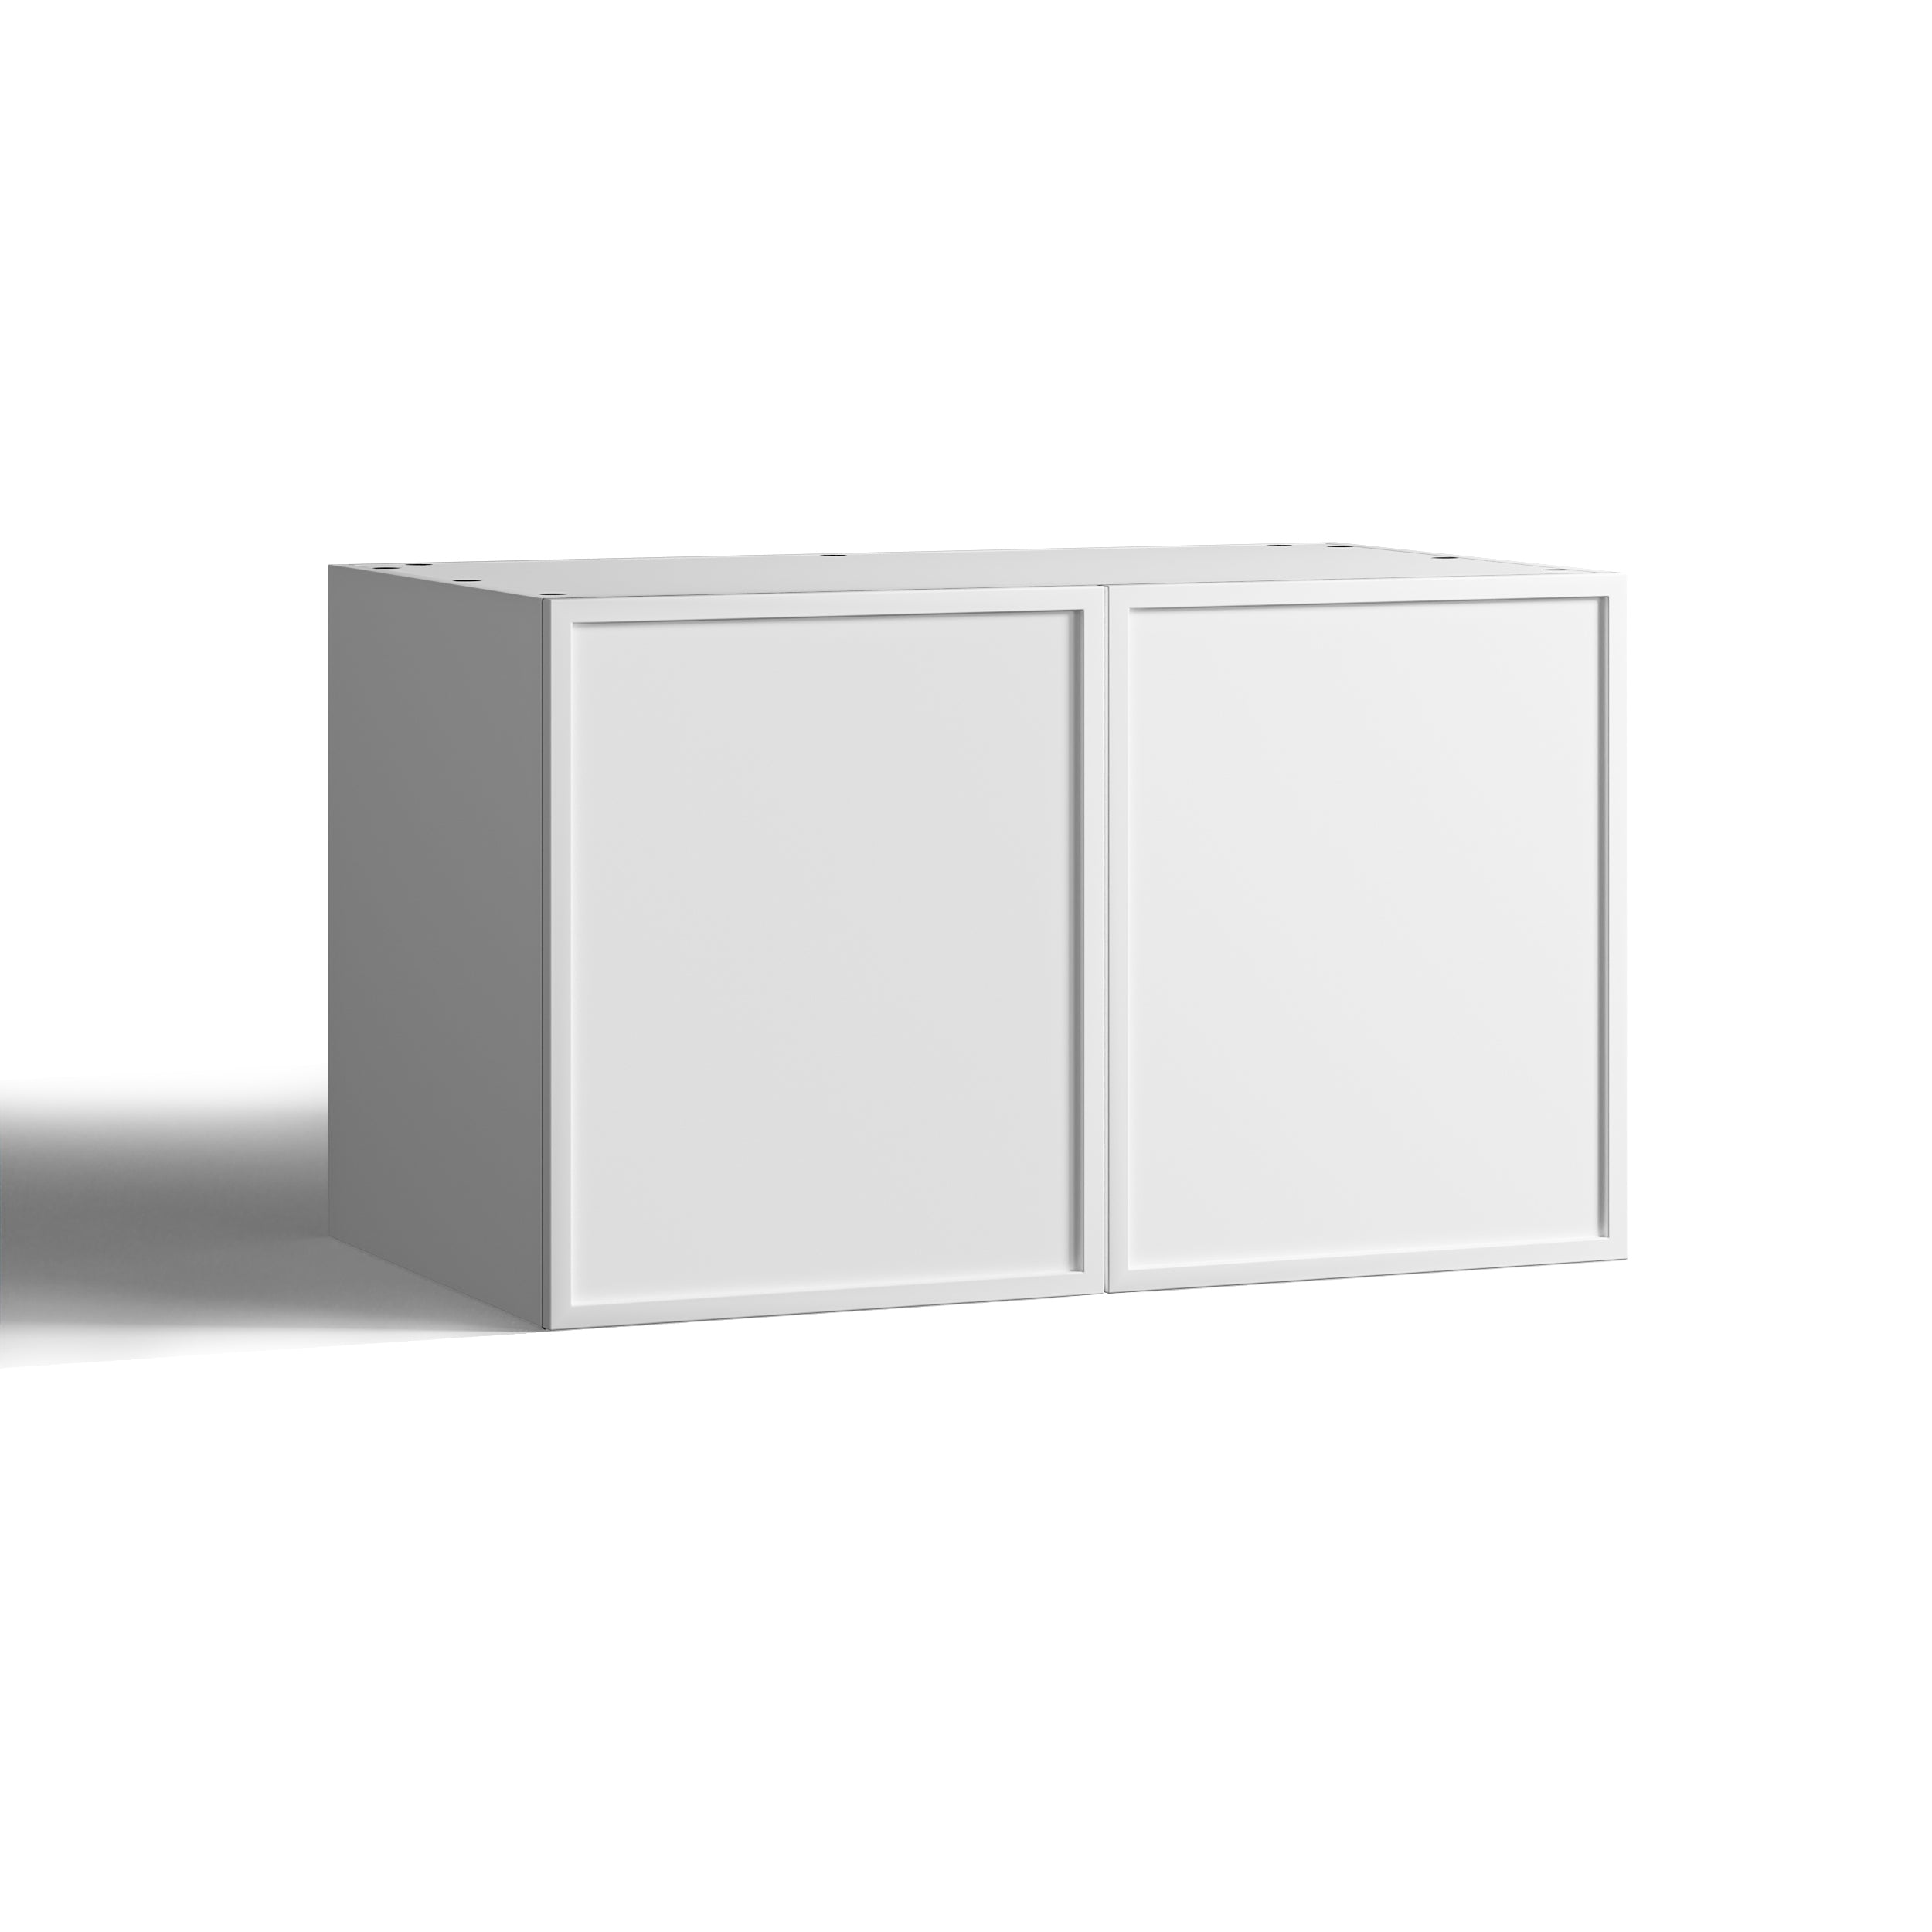 75x60 - Cabinet (58cm D) w 2 Doors - Timber Veneer - Slim Shaker - PAX